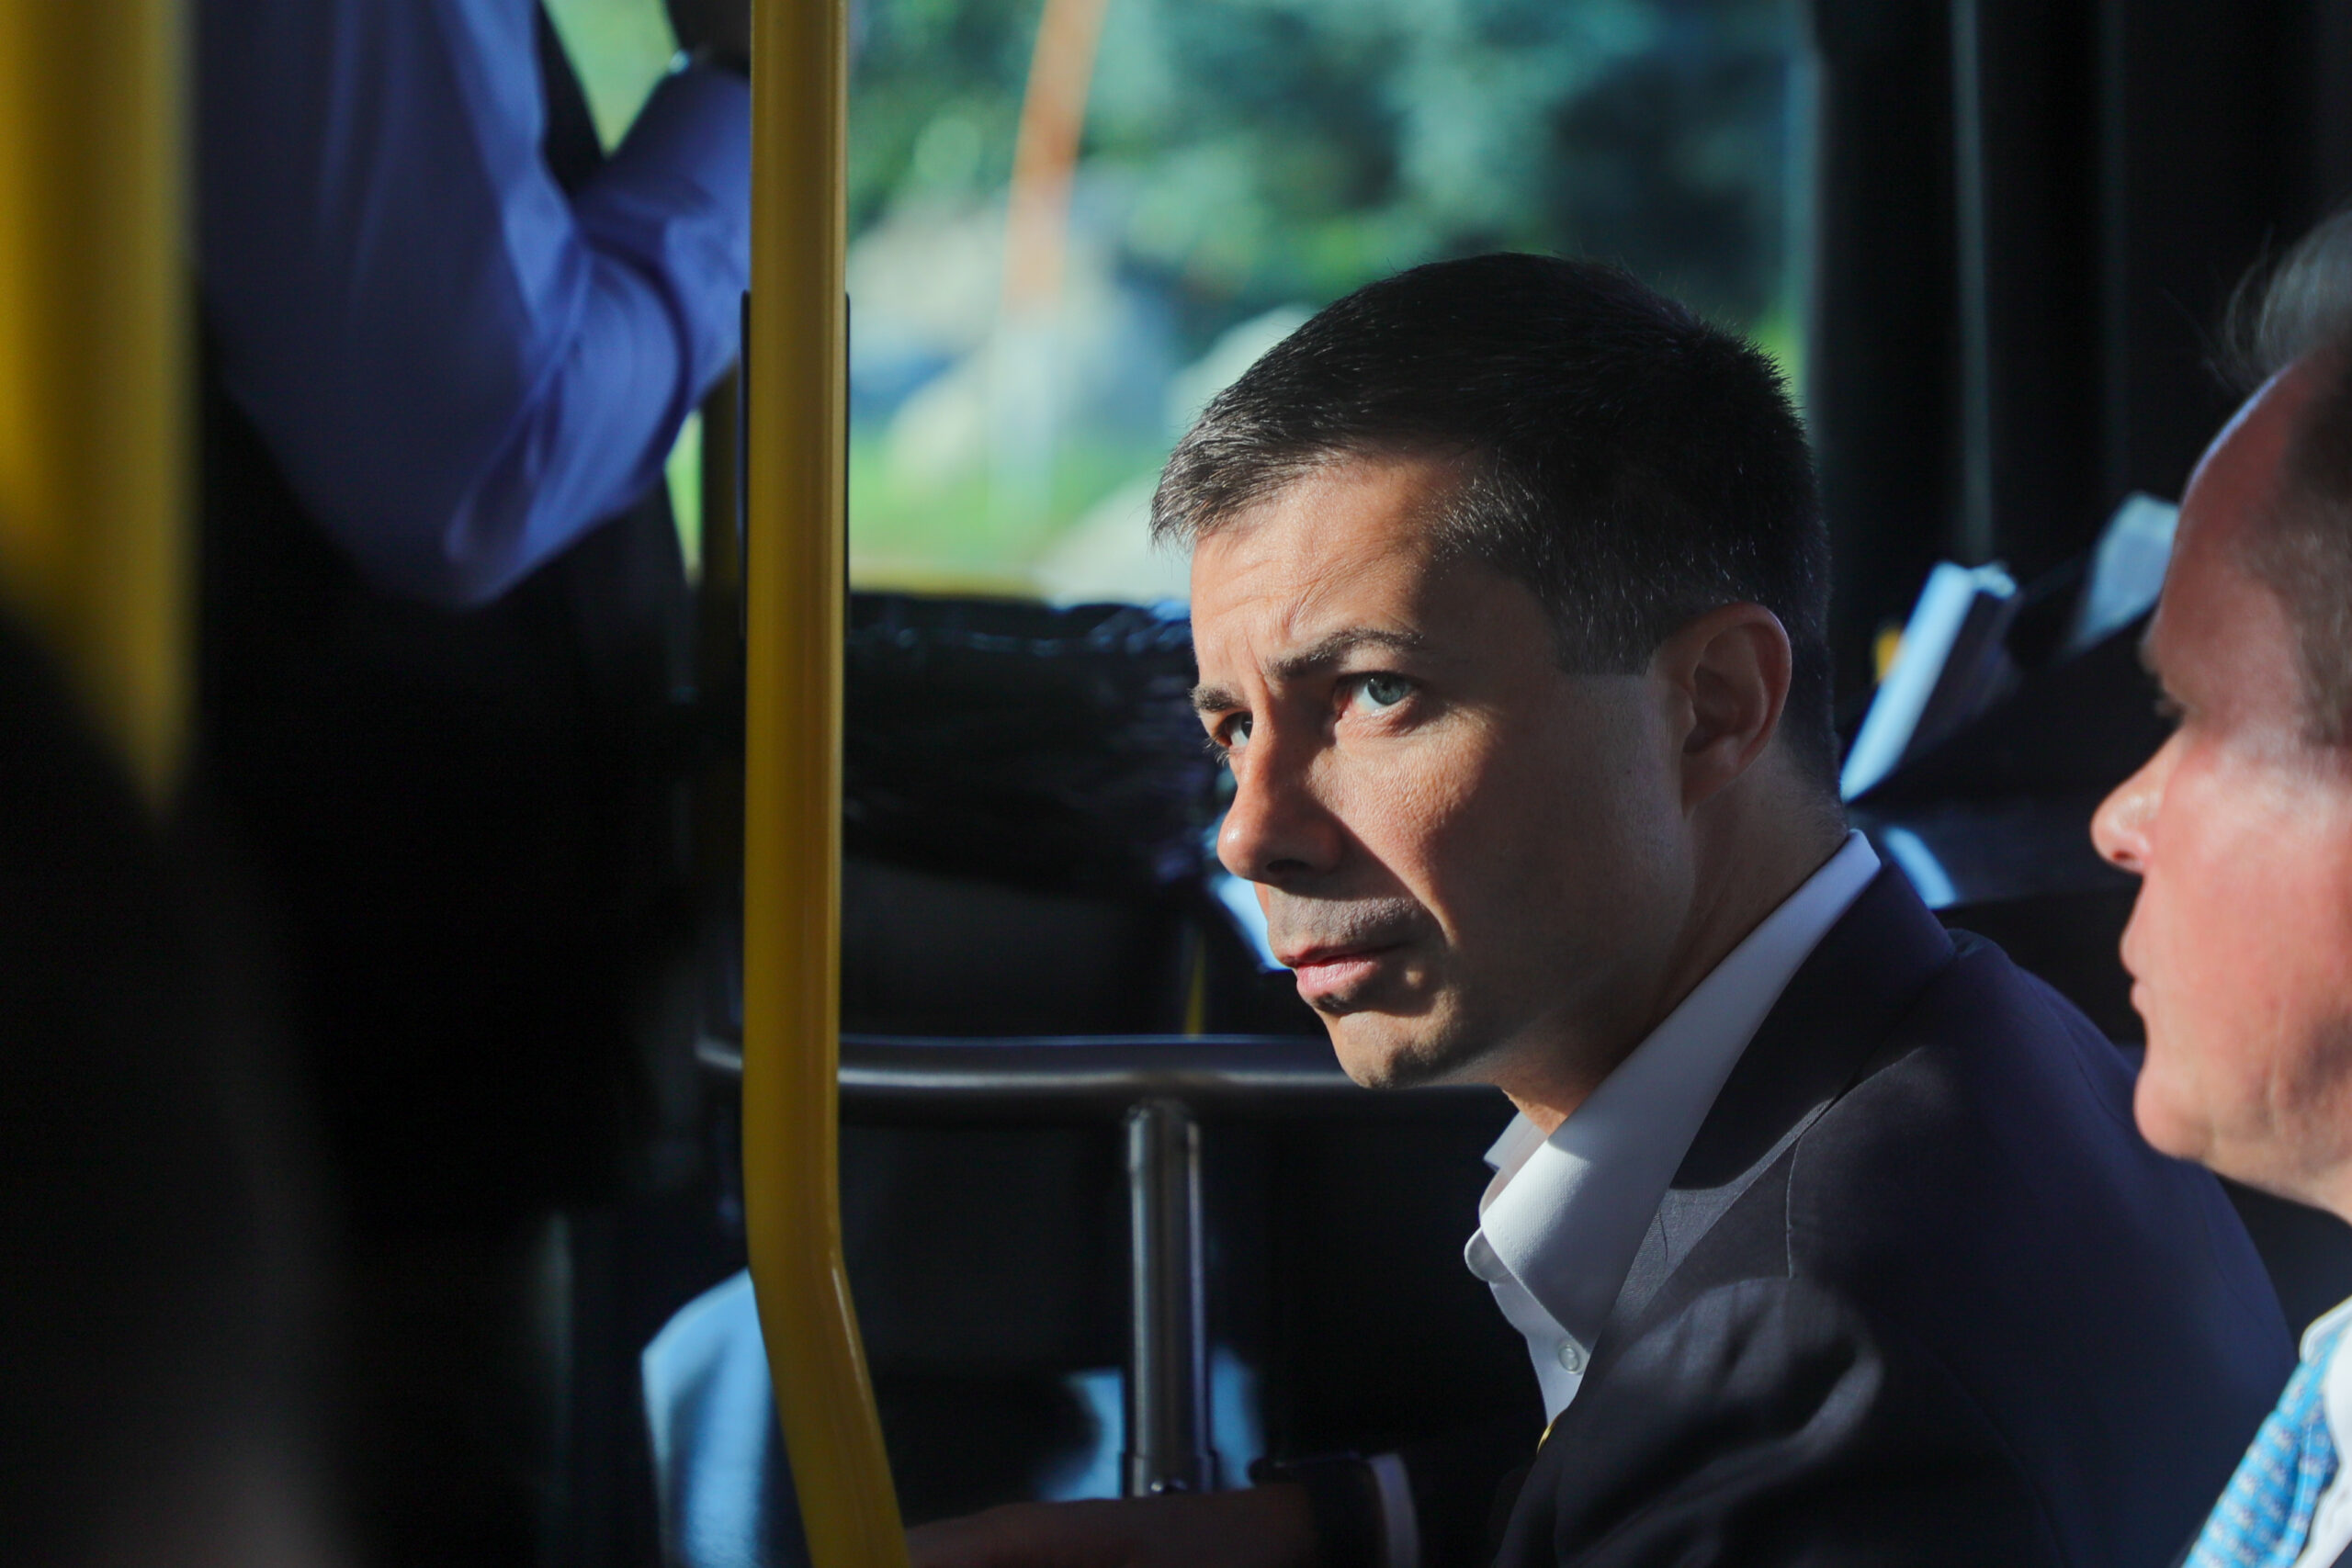 medium shot of a man sitting on a bus.